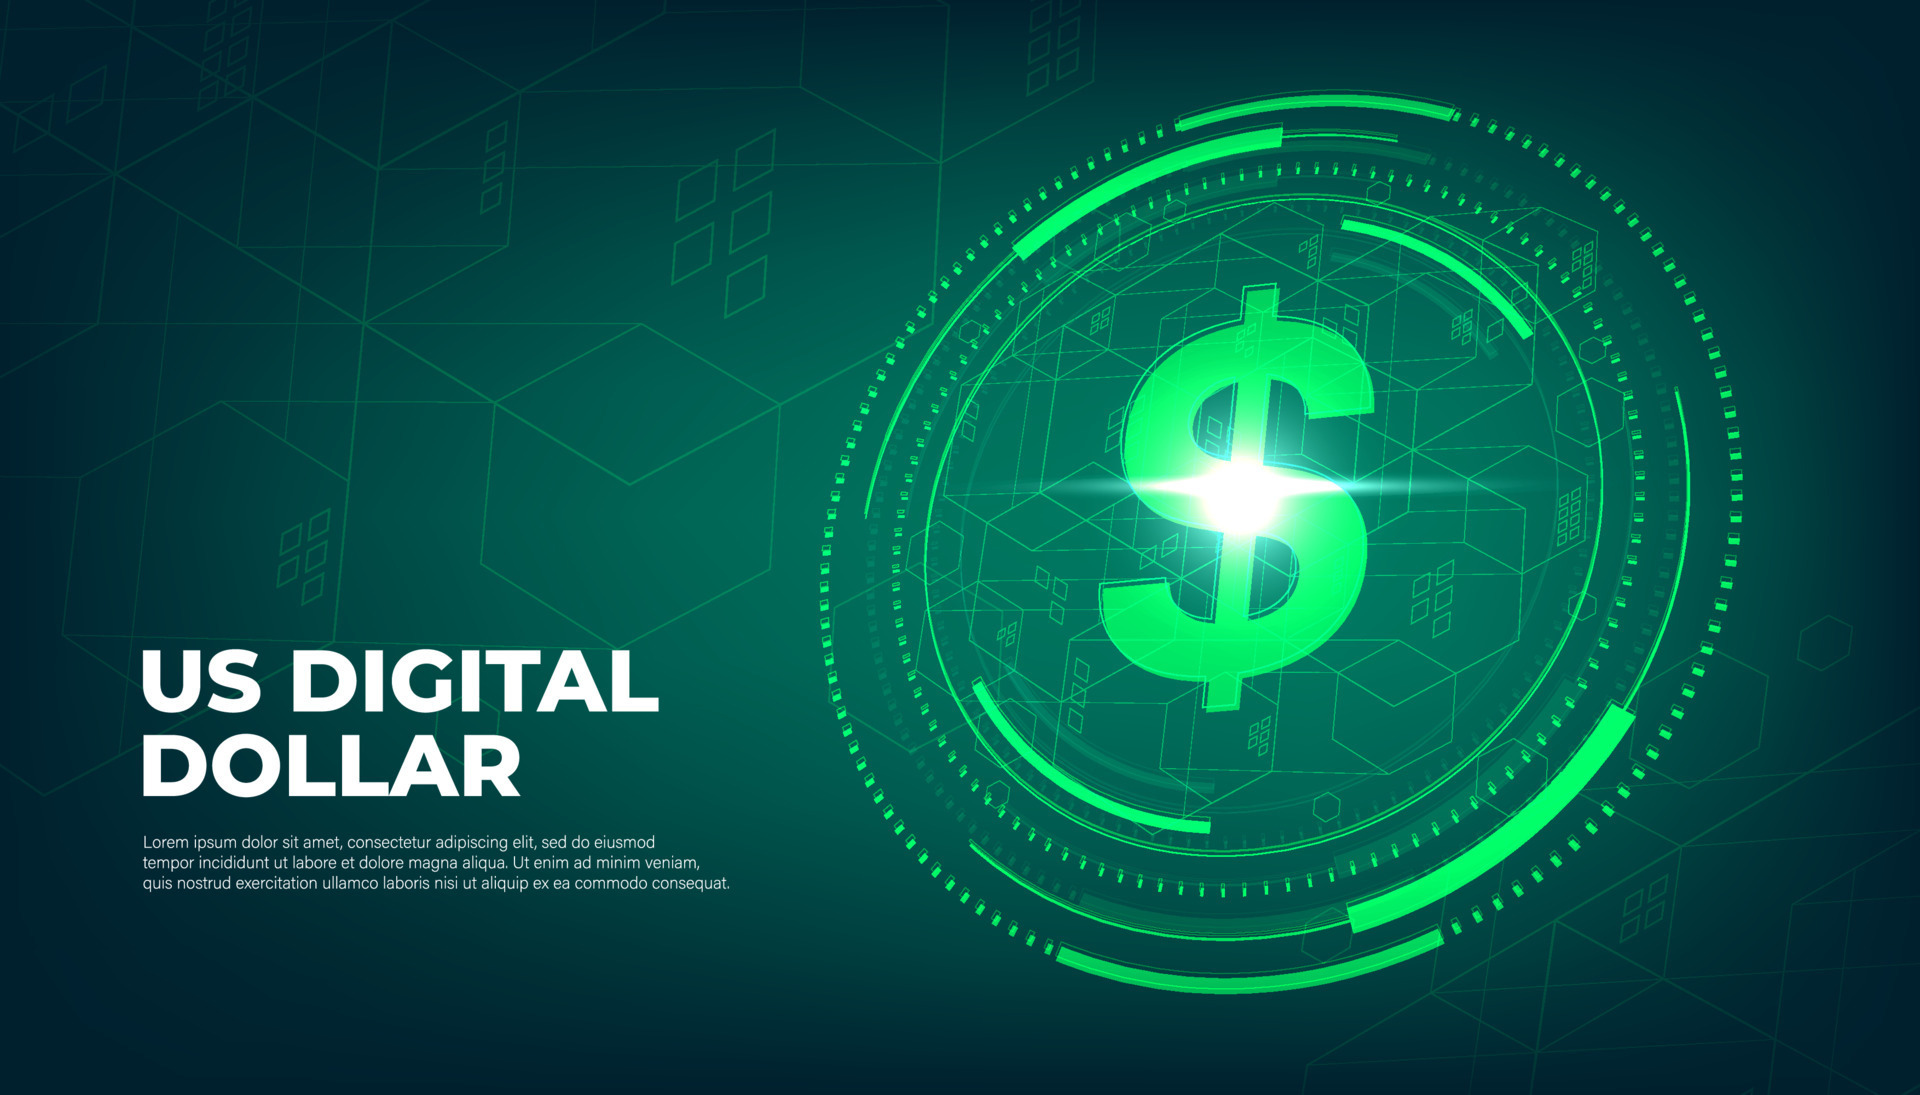 Digital currency USA dollar sign, US Digital Dollar futuristic digital